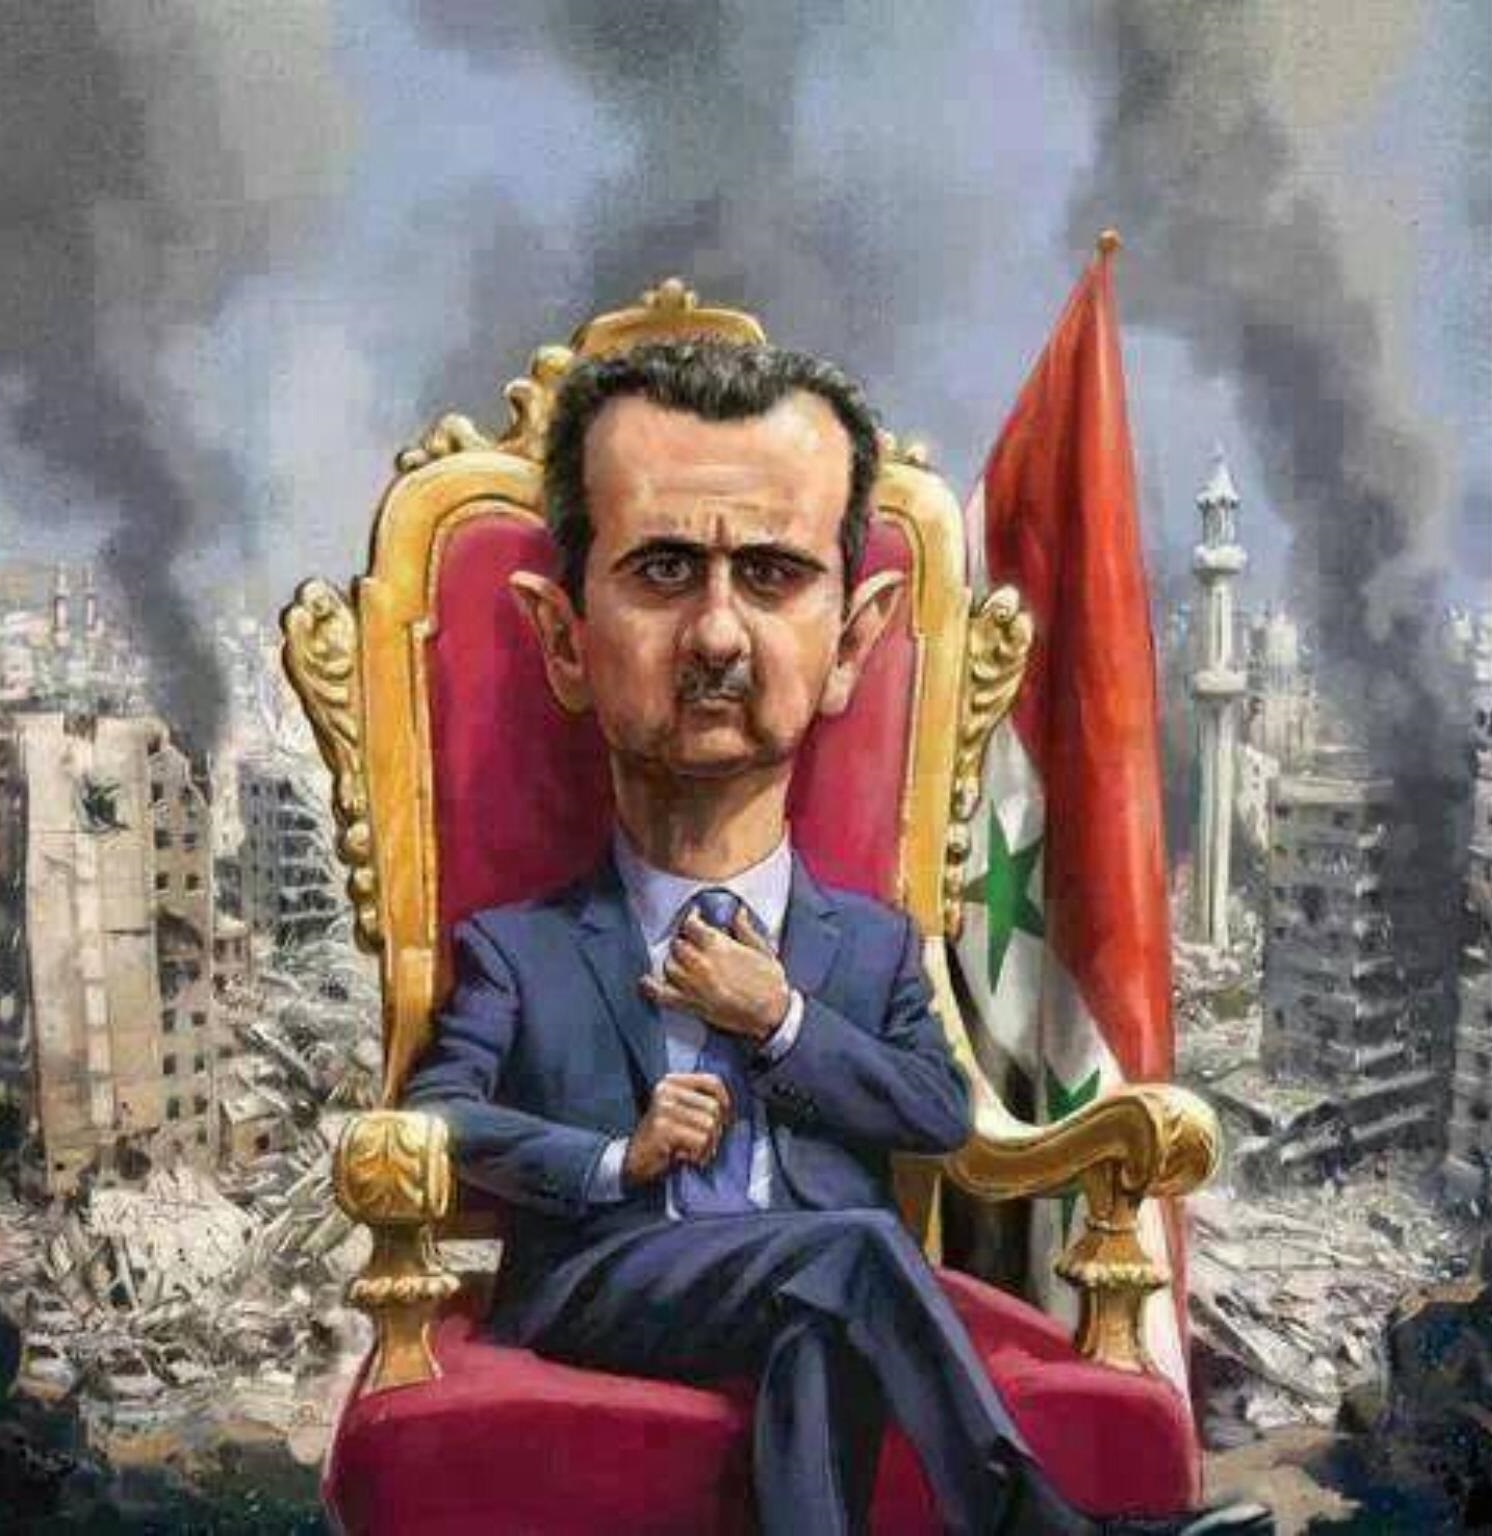 الطاغية الأسد يصدر عفواً عاماً يشمل مرتكبي الجرائم الإرهابية والجنايات